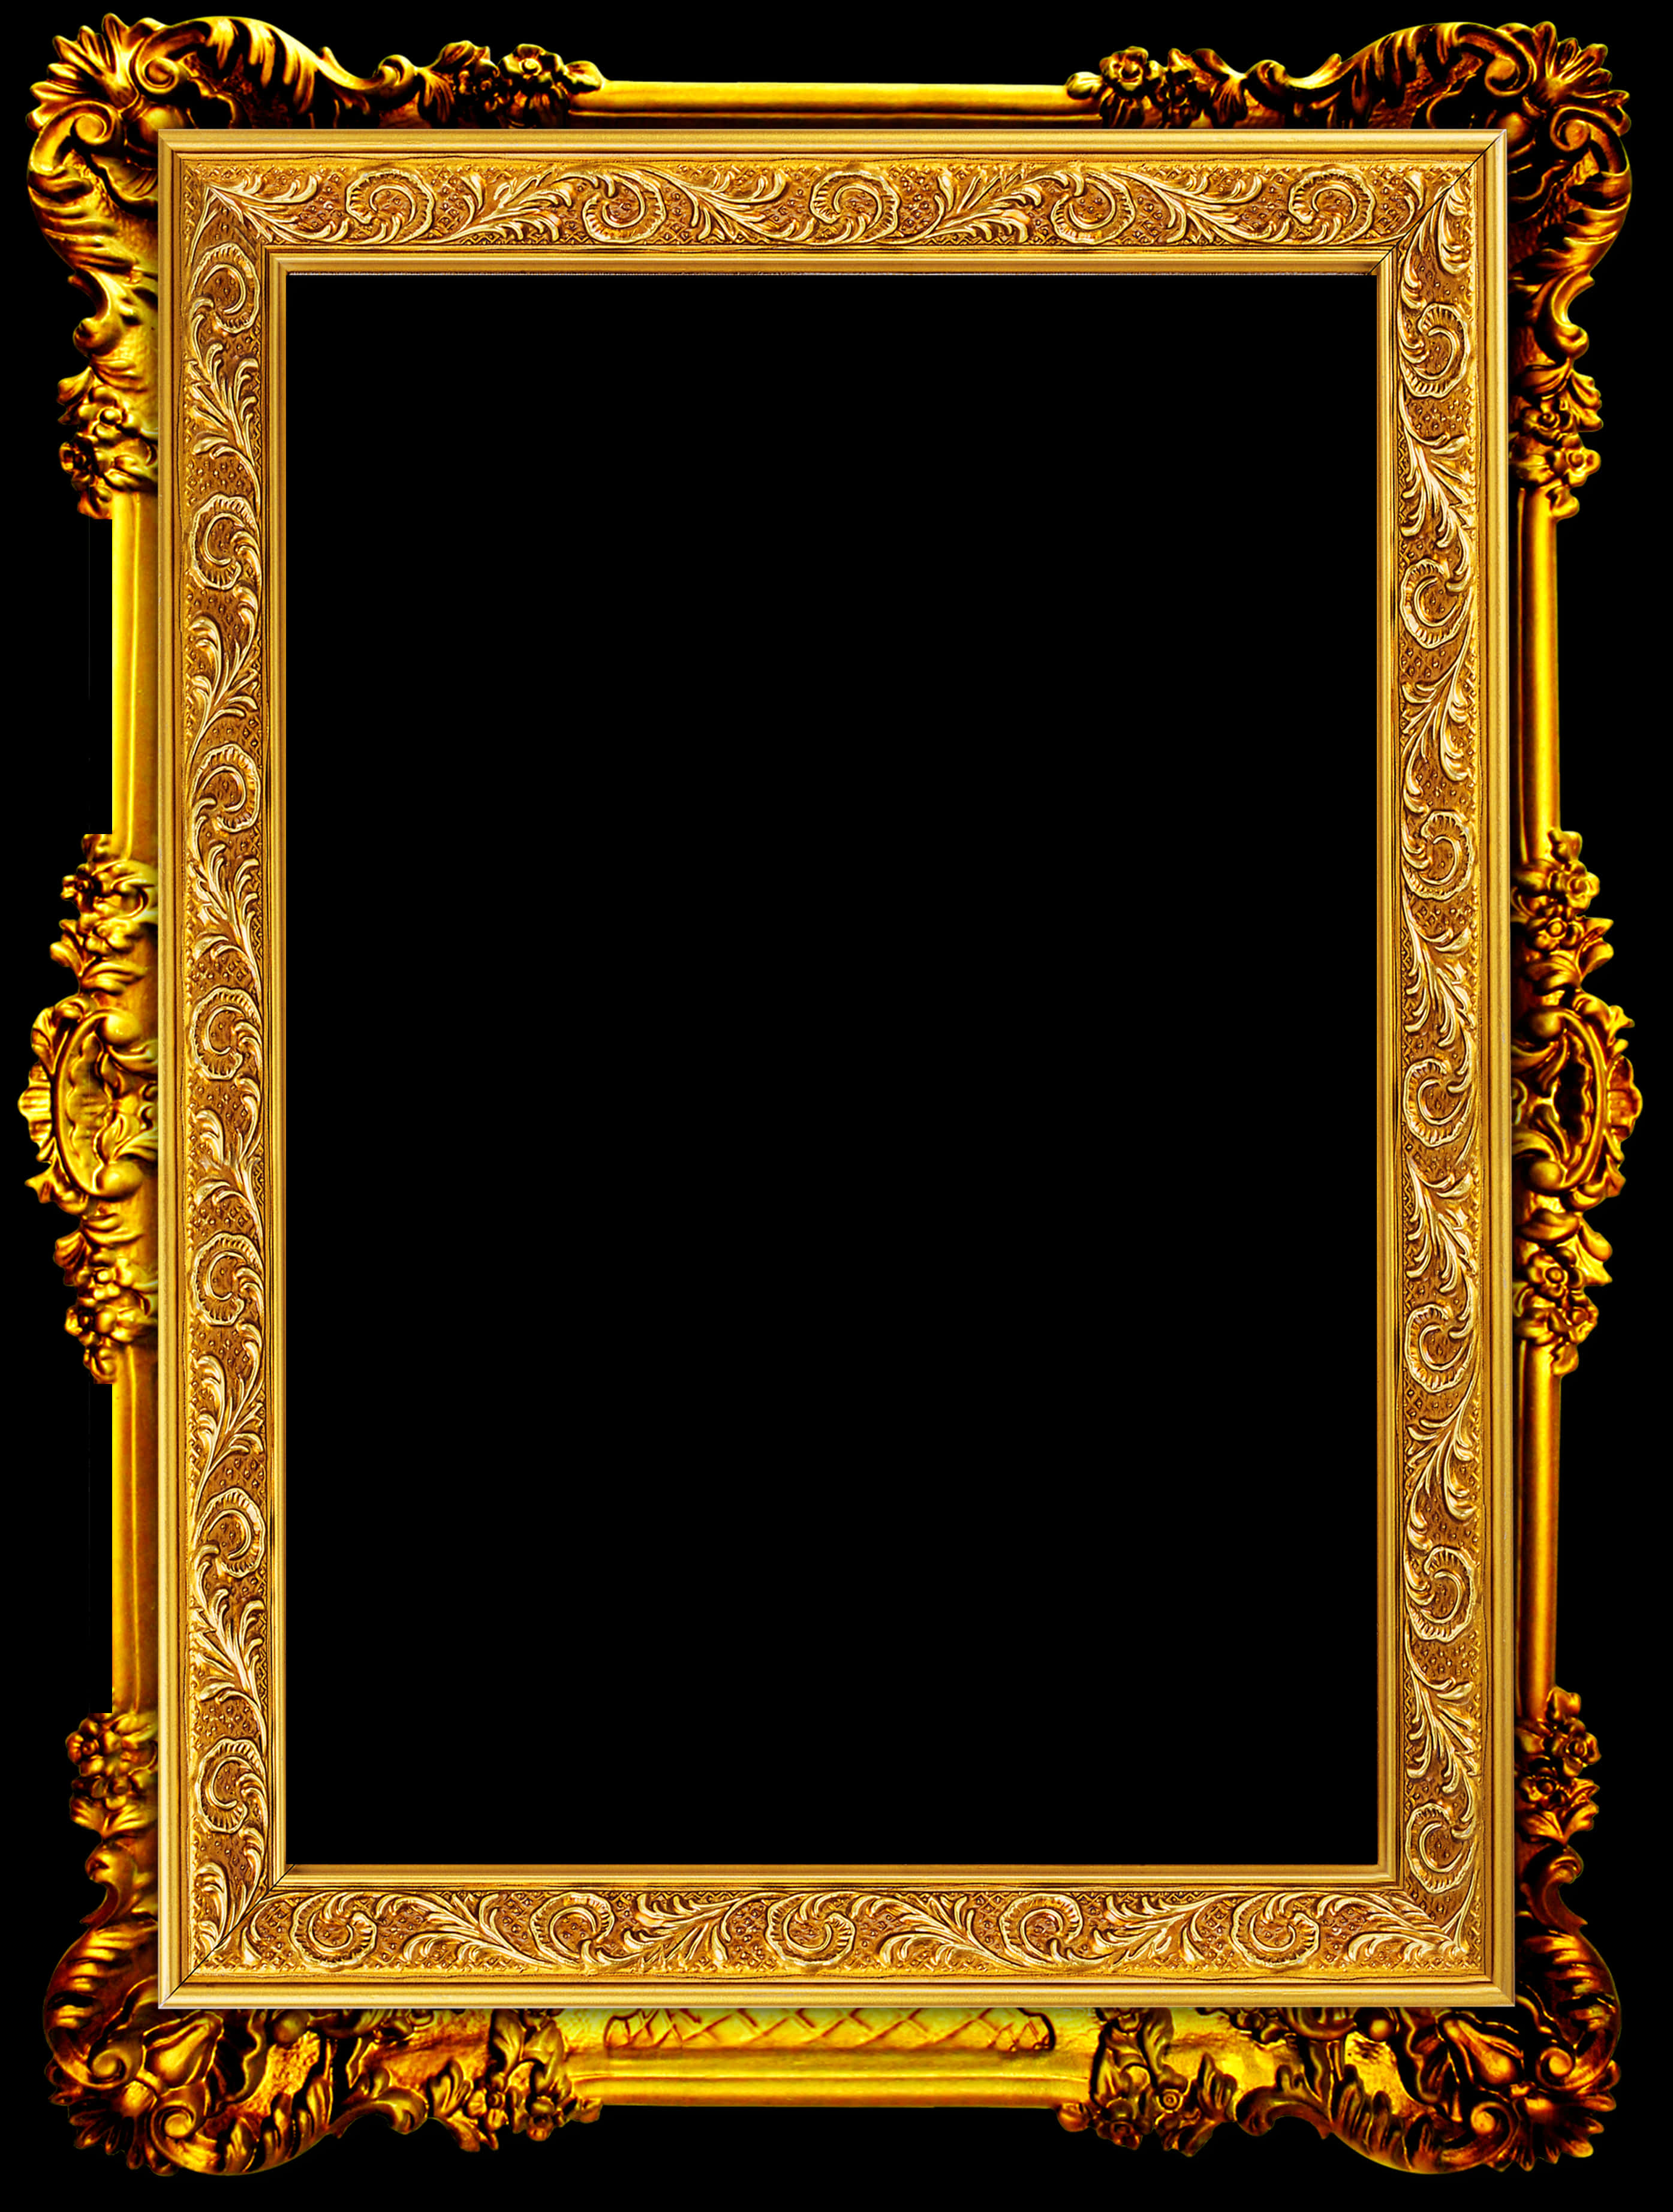 Ornate Golden Frame Design PNG image